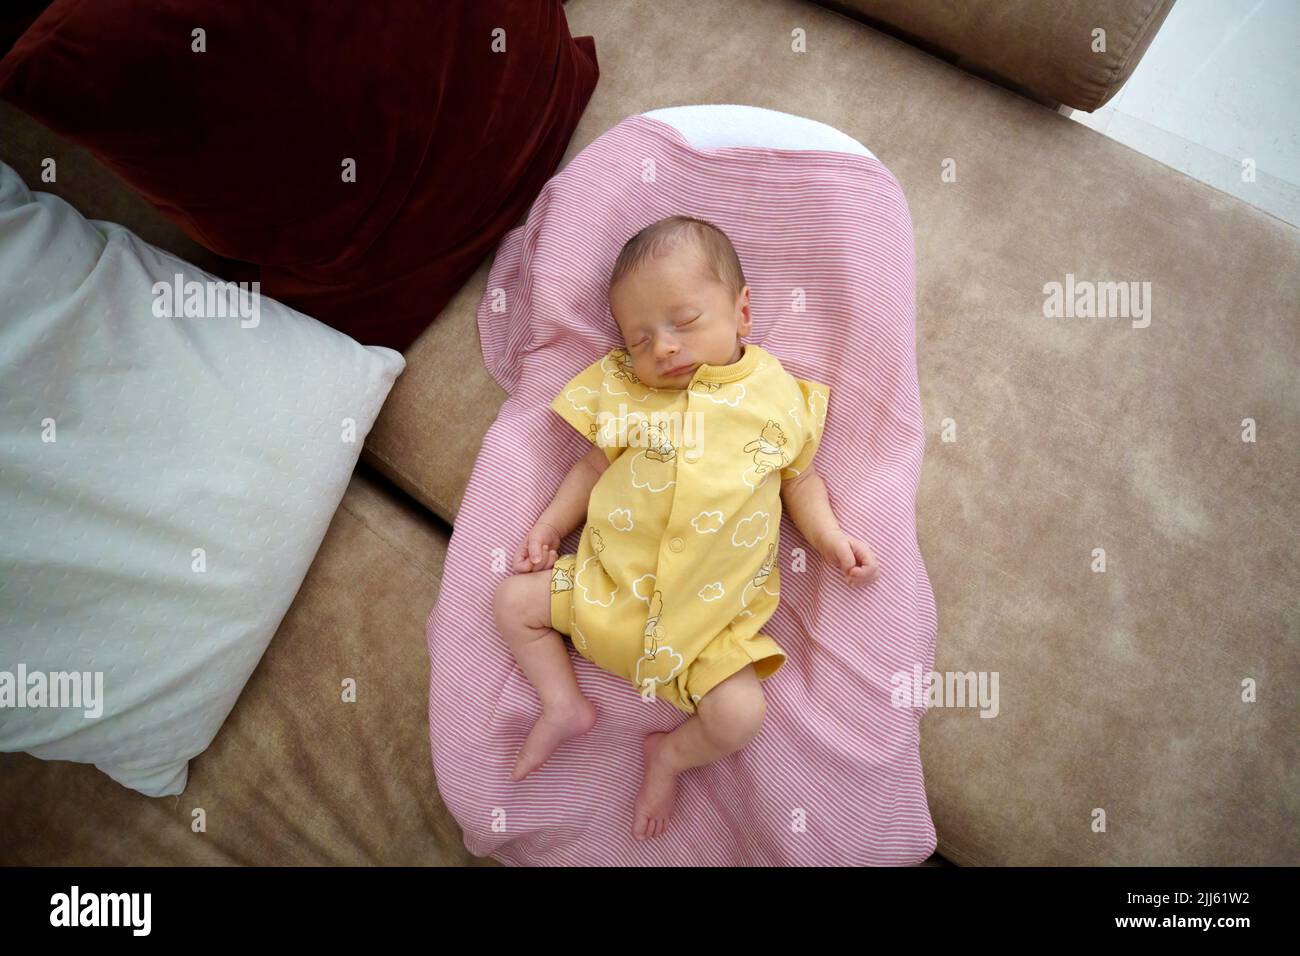 Vista superior de un bebé durmiendo en un sofá Foto de stock